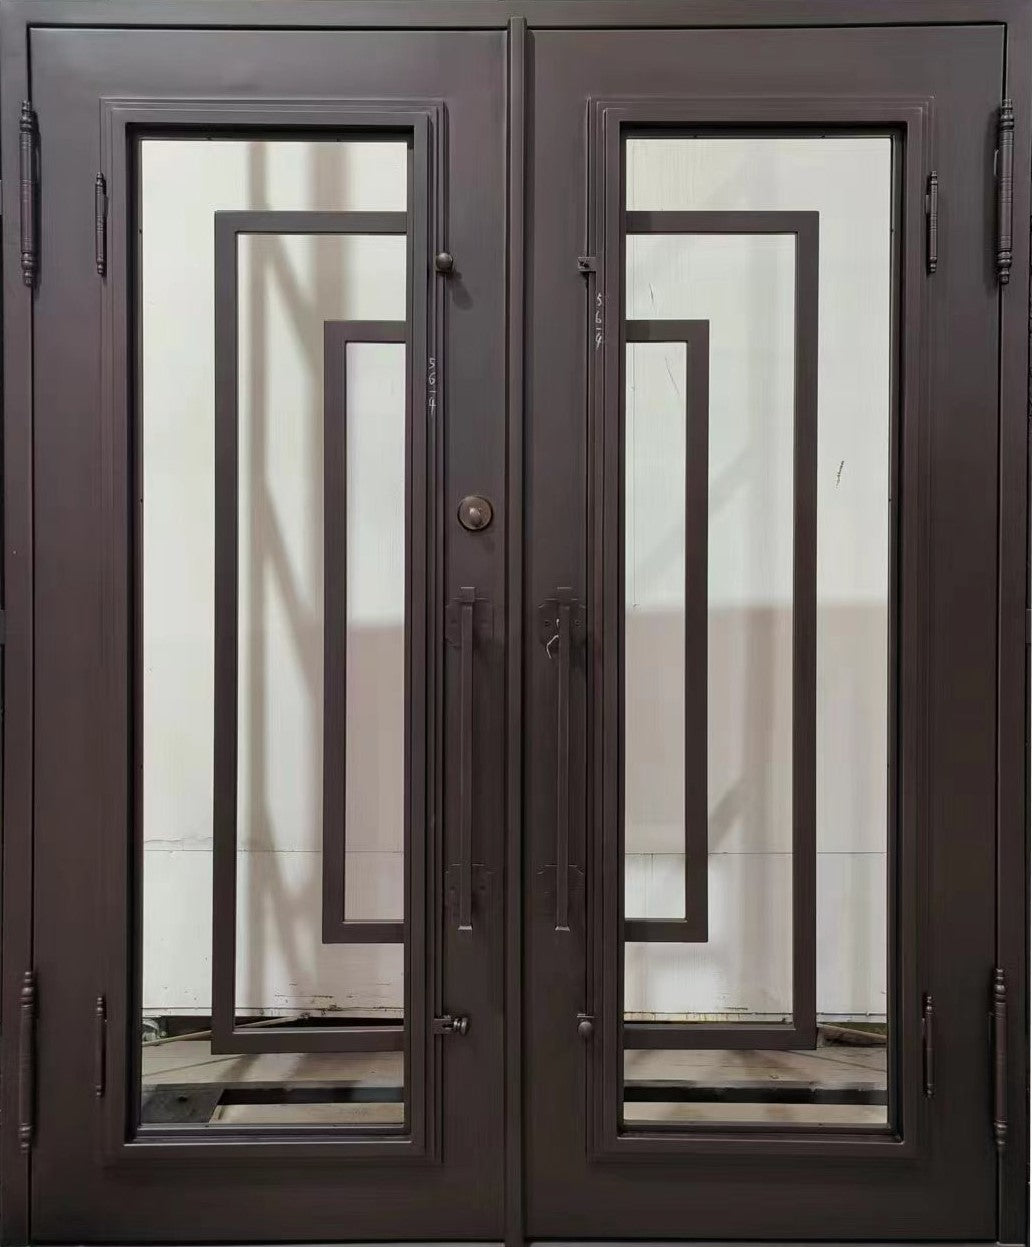 Iron Vatican Iron Door | Square Top With kickplate | Model # IWD 947